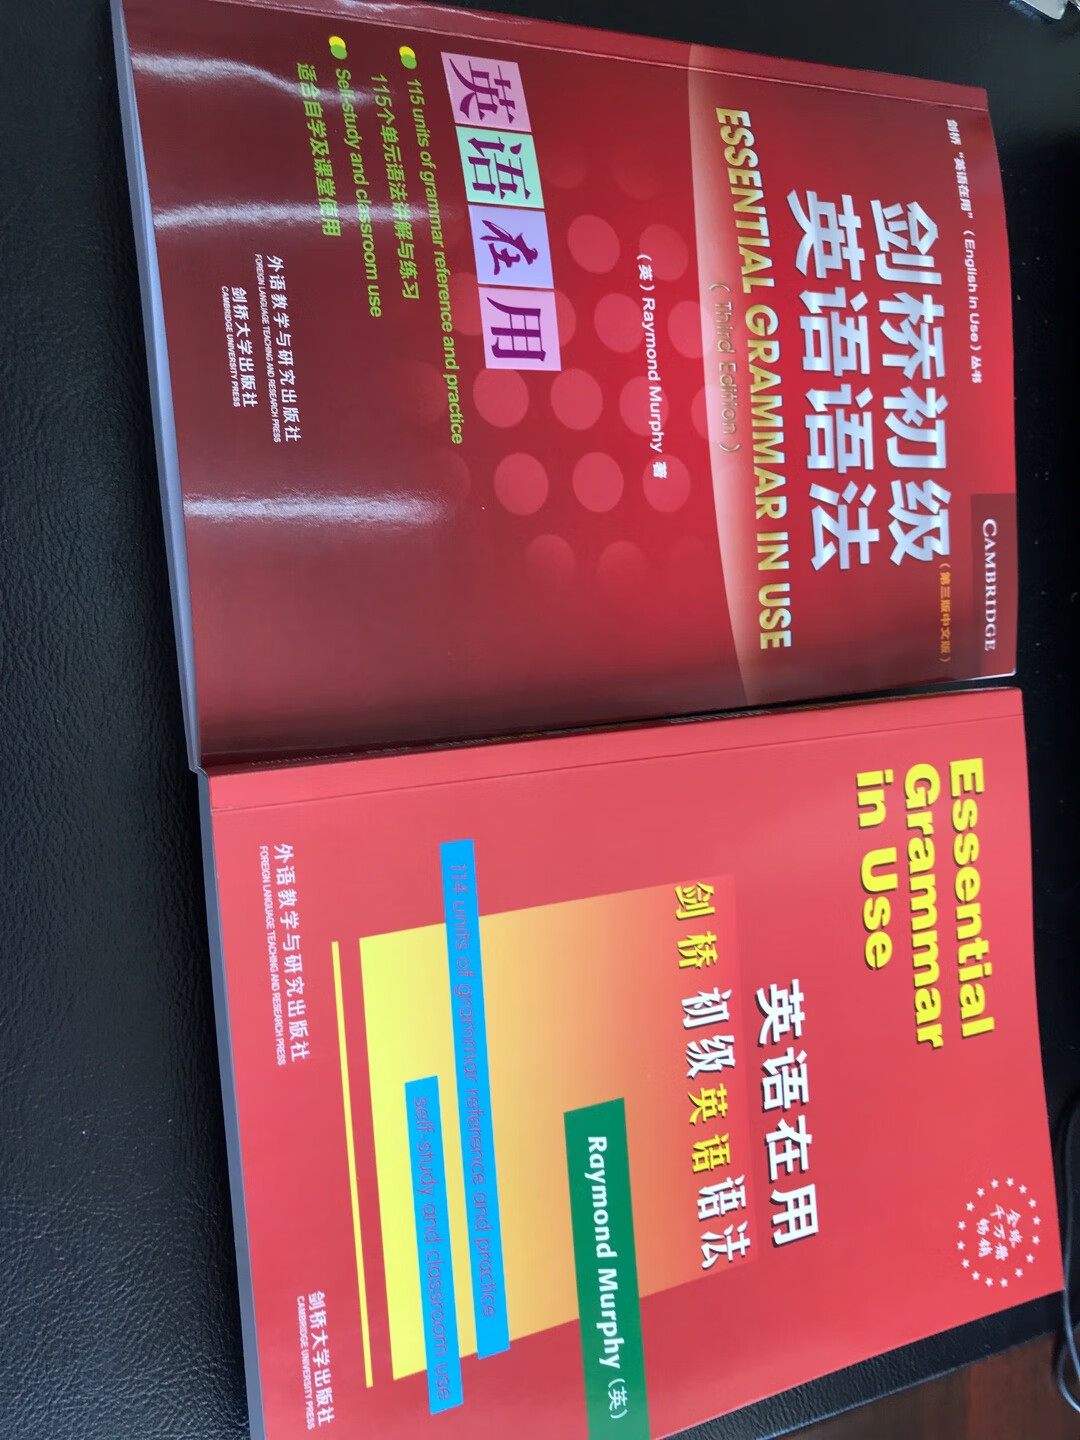 这是原版，因看网上说中文版和原版有区别，就下单又买了原版的想比较一下，发现区别不大，前半部分几乎没有区别，后面的中文版有缩减。